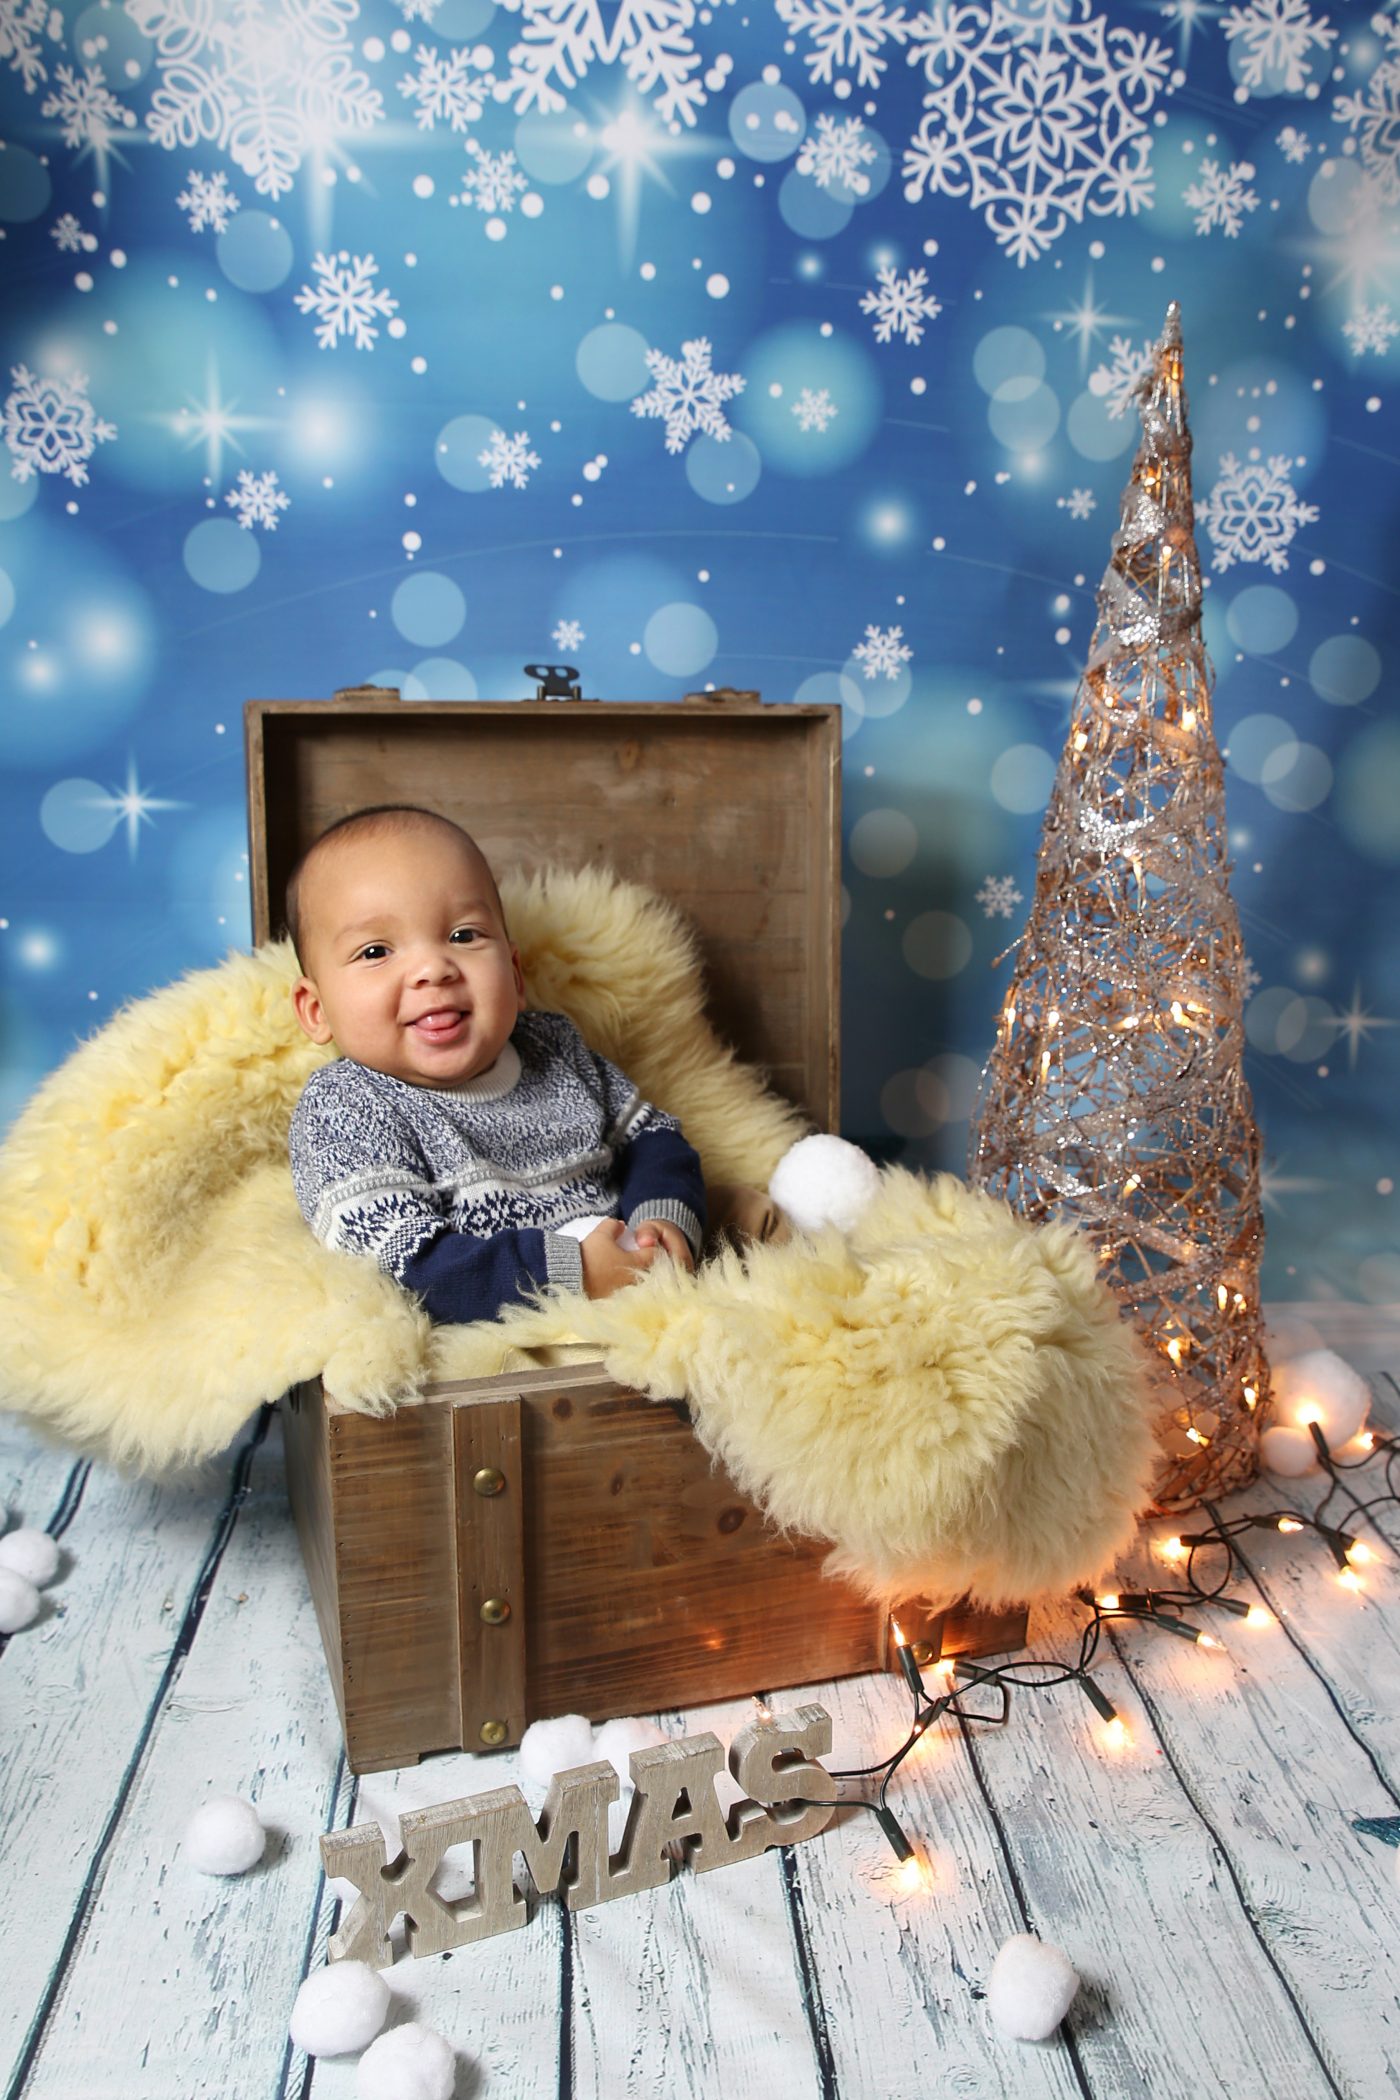 Baby fotografiert in Holzkiste zur Weihnachtszeit